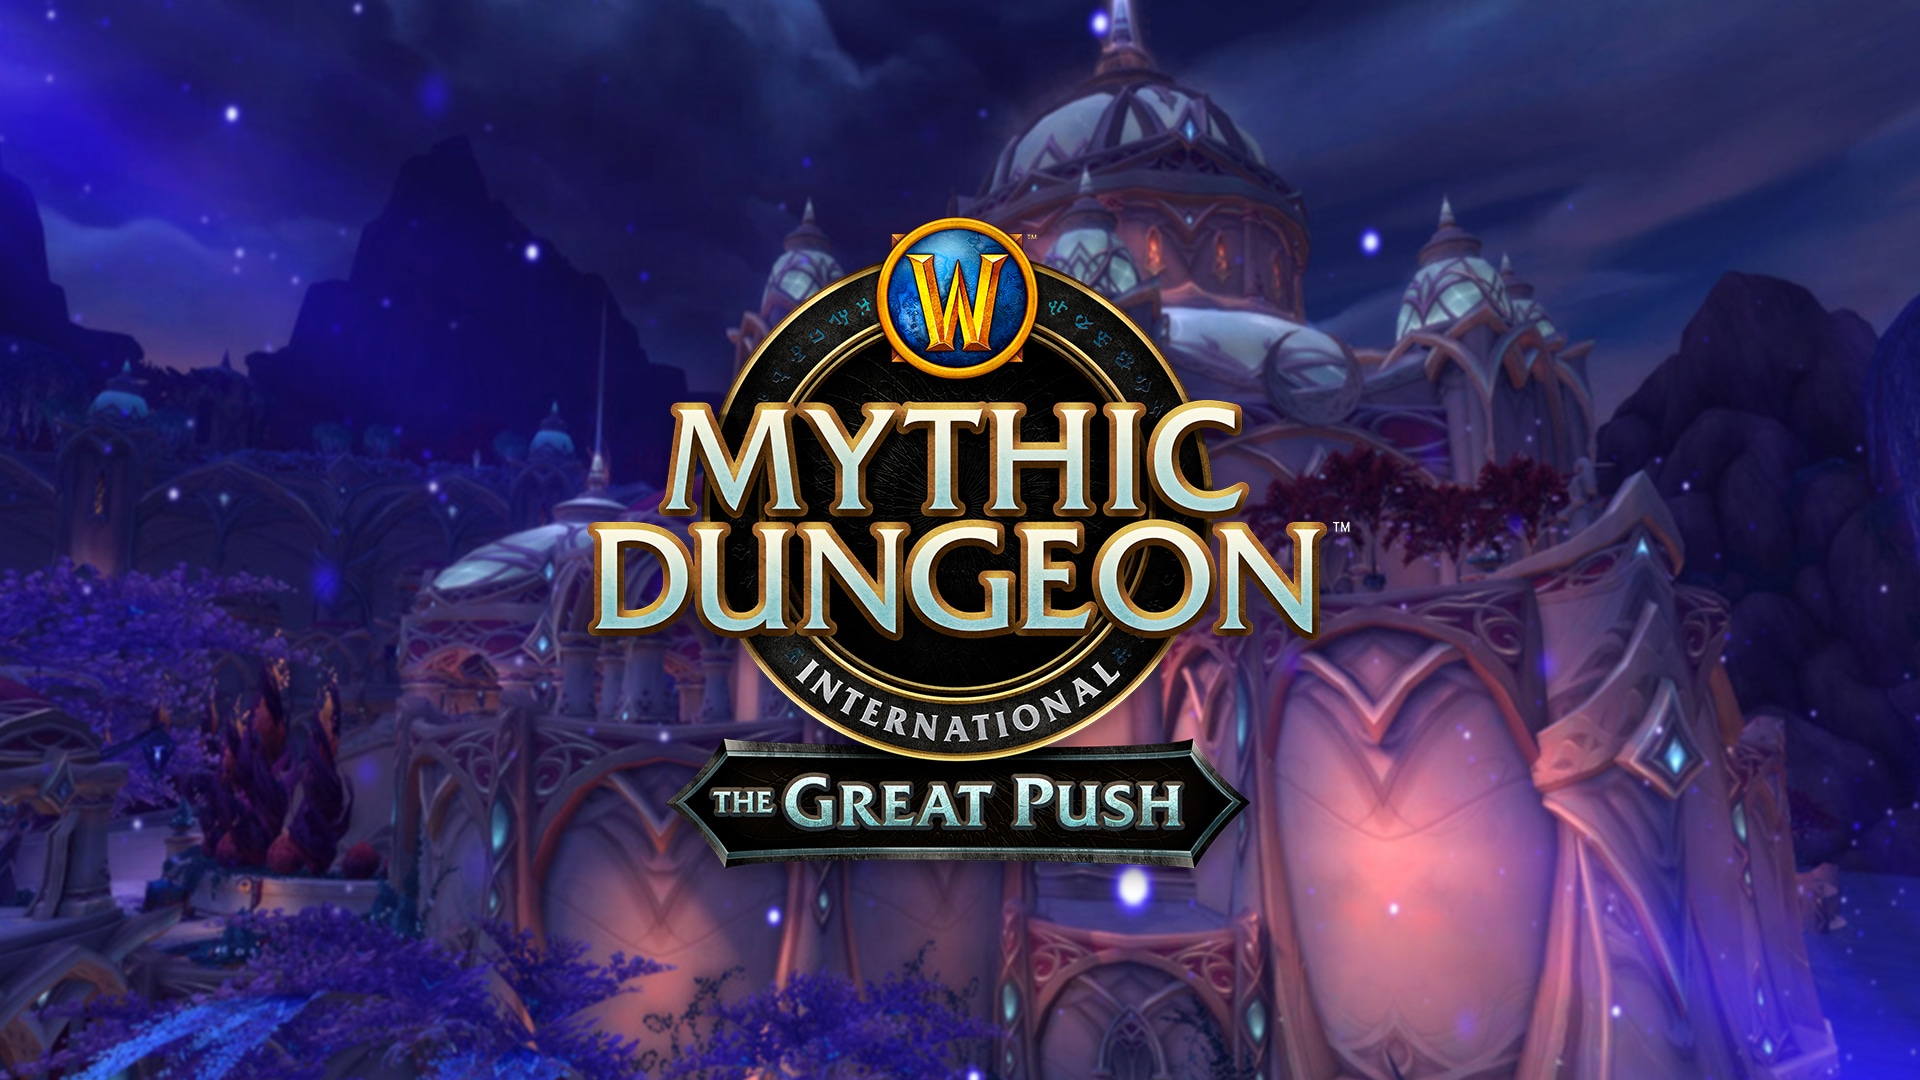 A Temporada 2 do Great Push de World of Warcraft está chegando!